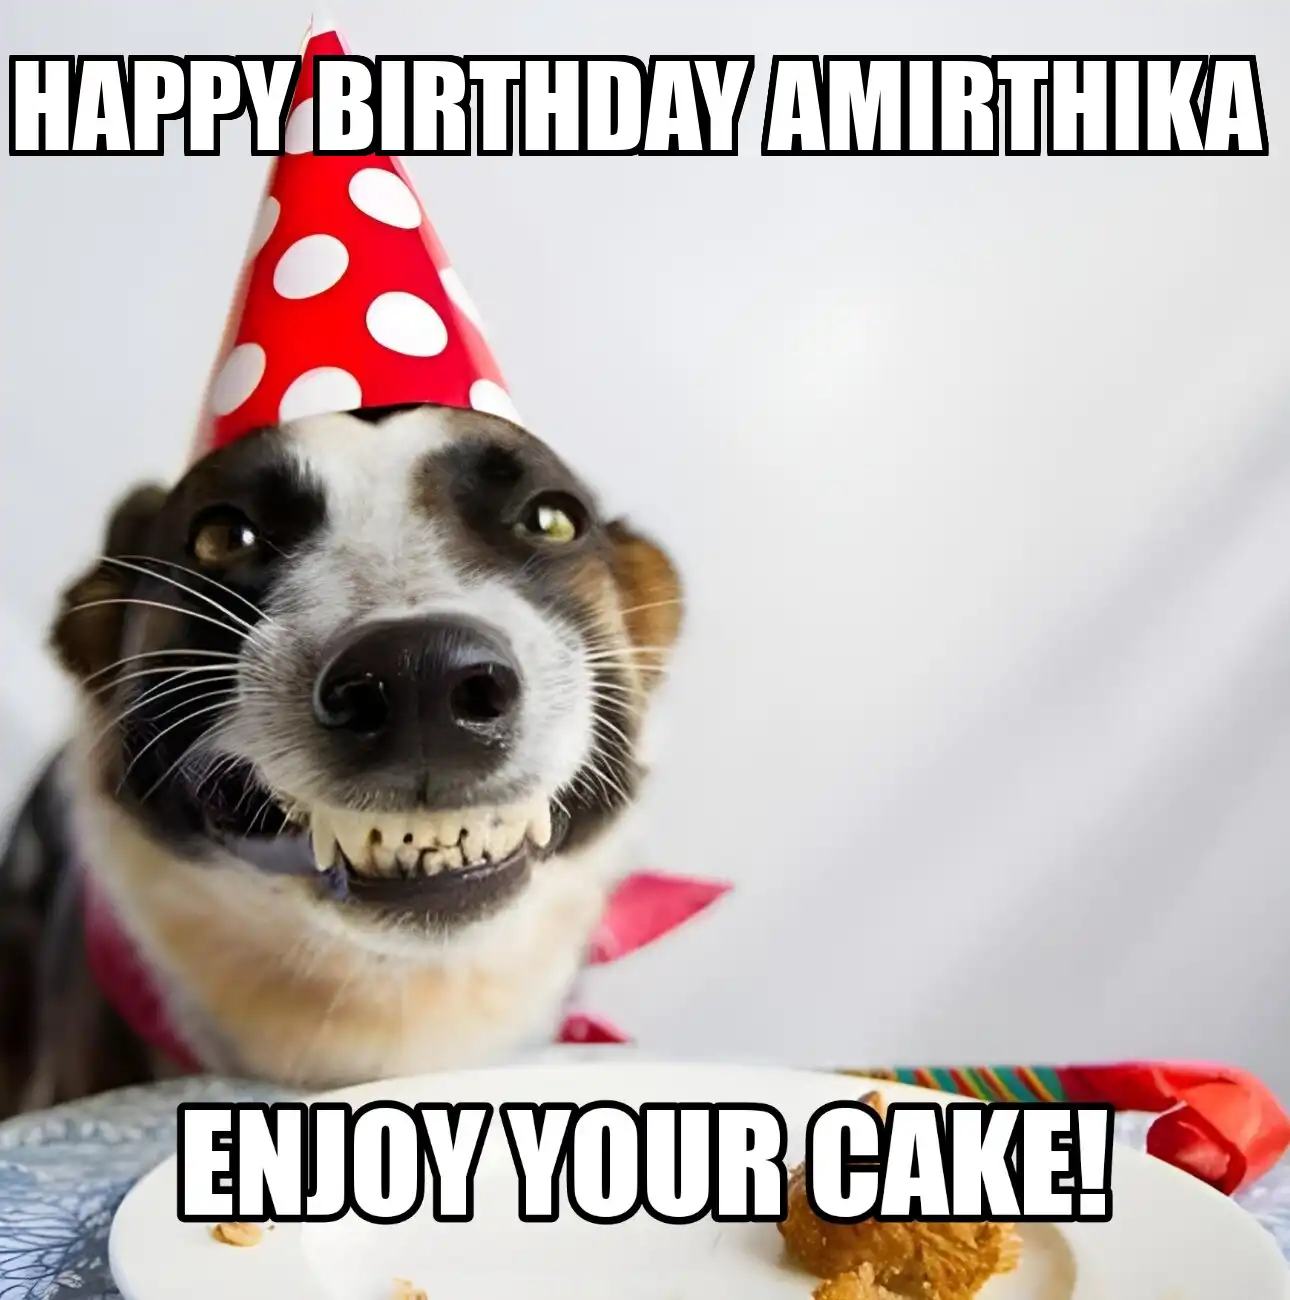 Happy Birthday Amirthika Enjoy Your Cake Dog Meme